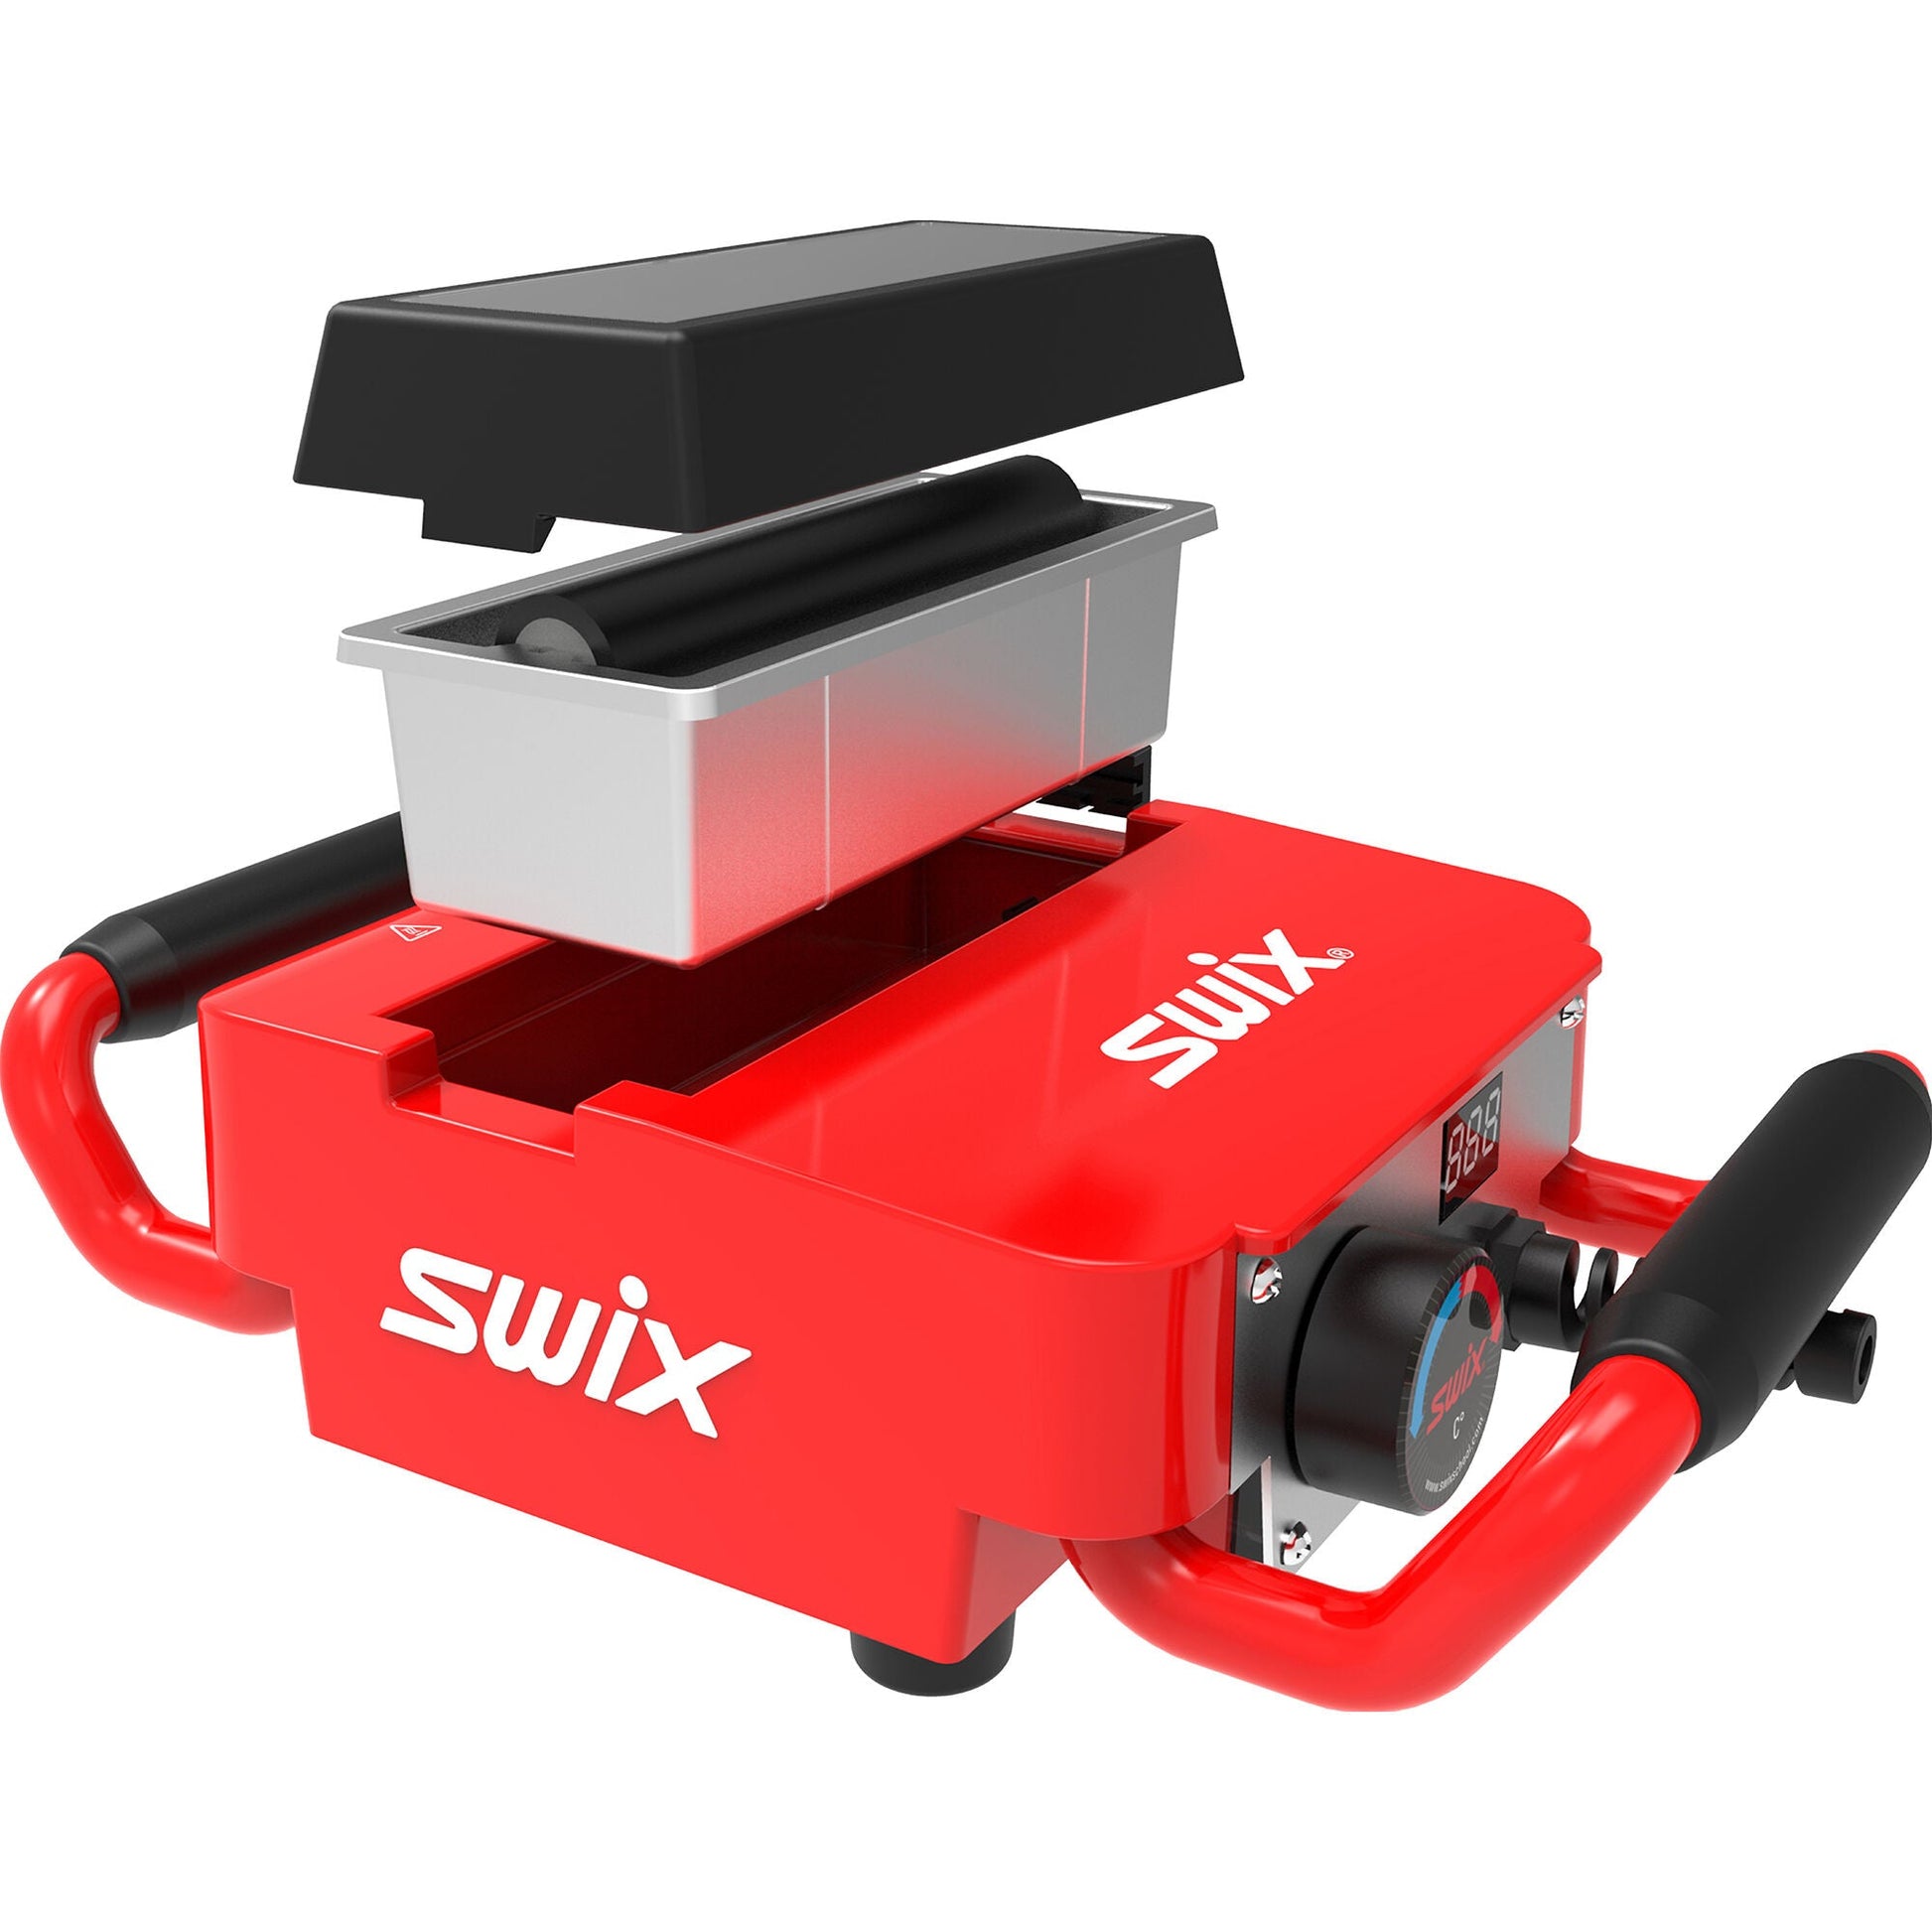 SWIX Wax Machine 110V